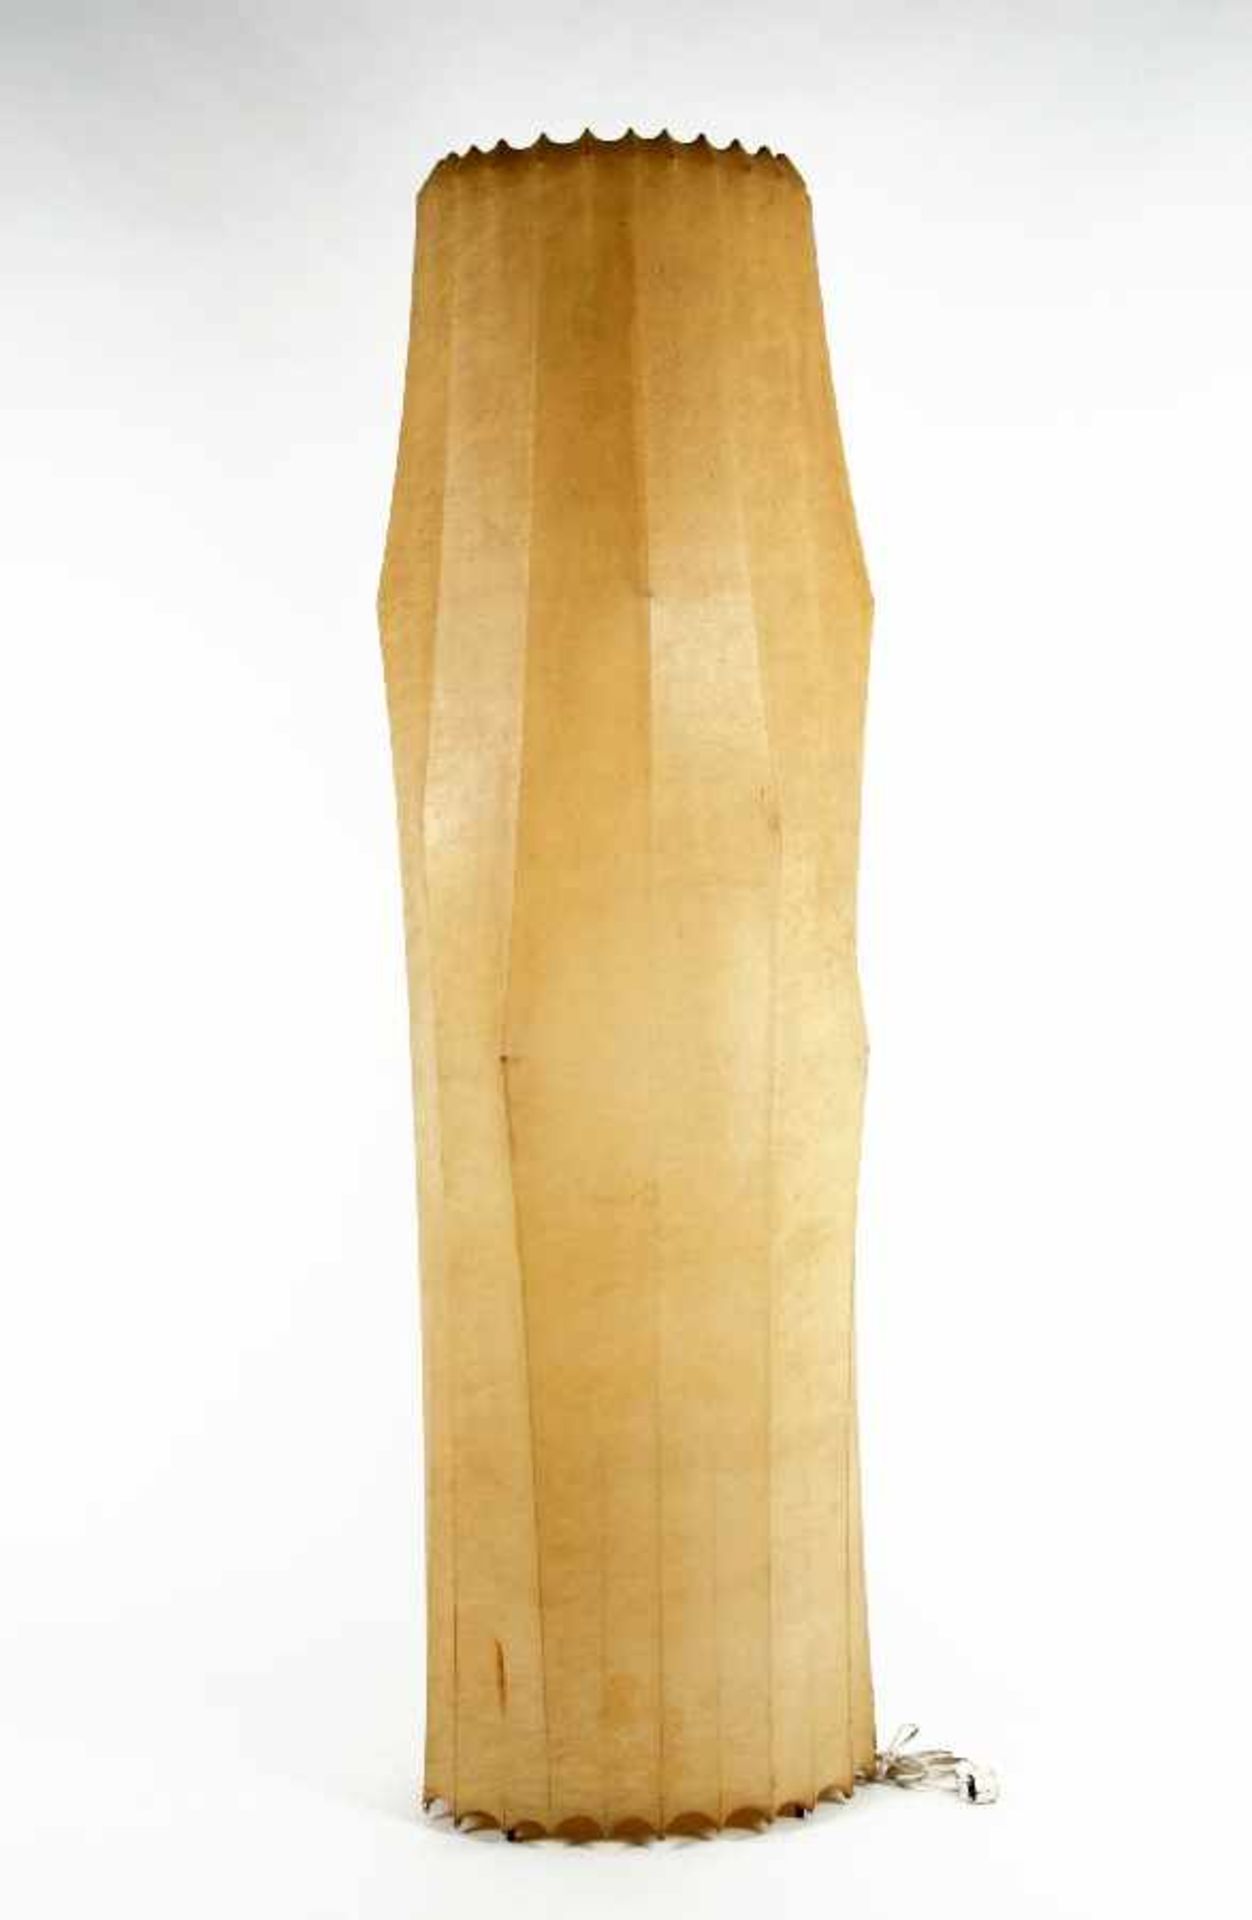 Tobia Scarpa1935Stehleuchte Fantasma GrandeMetall, Glasfaserbezug; H 193 cm; Hersteller Flos;